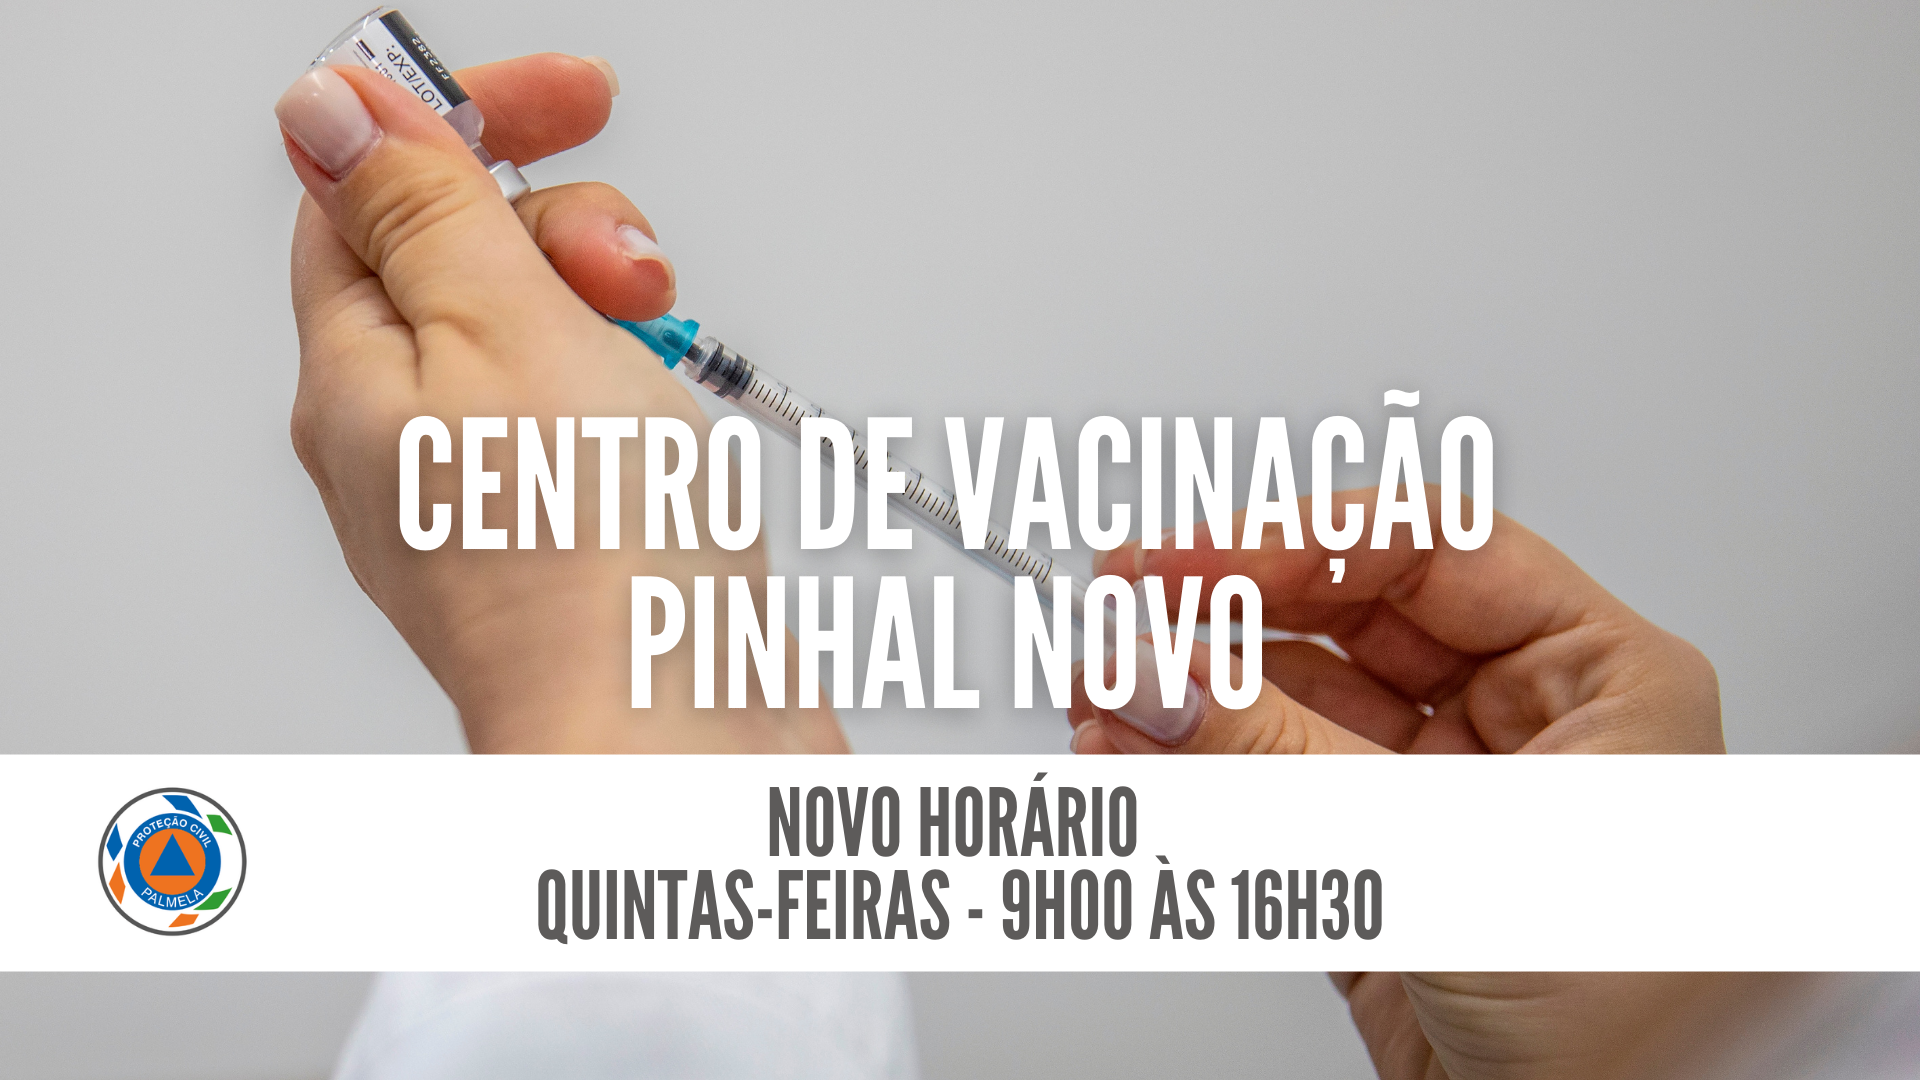 Centro de Vacinação/Pinhal Novo – novo horário em abril